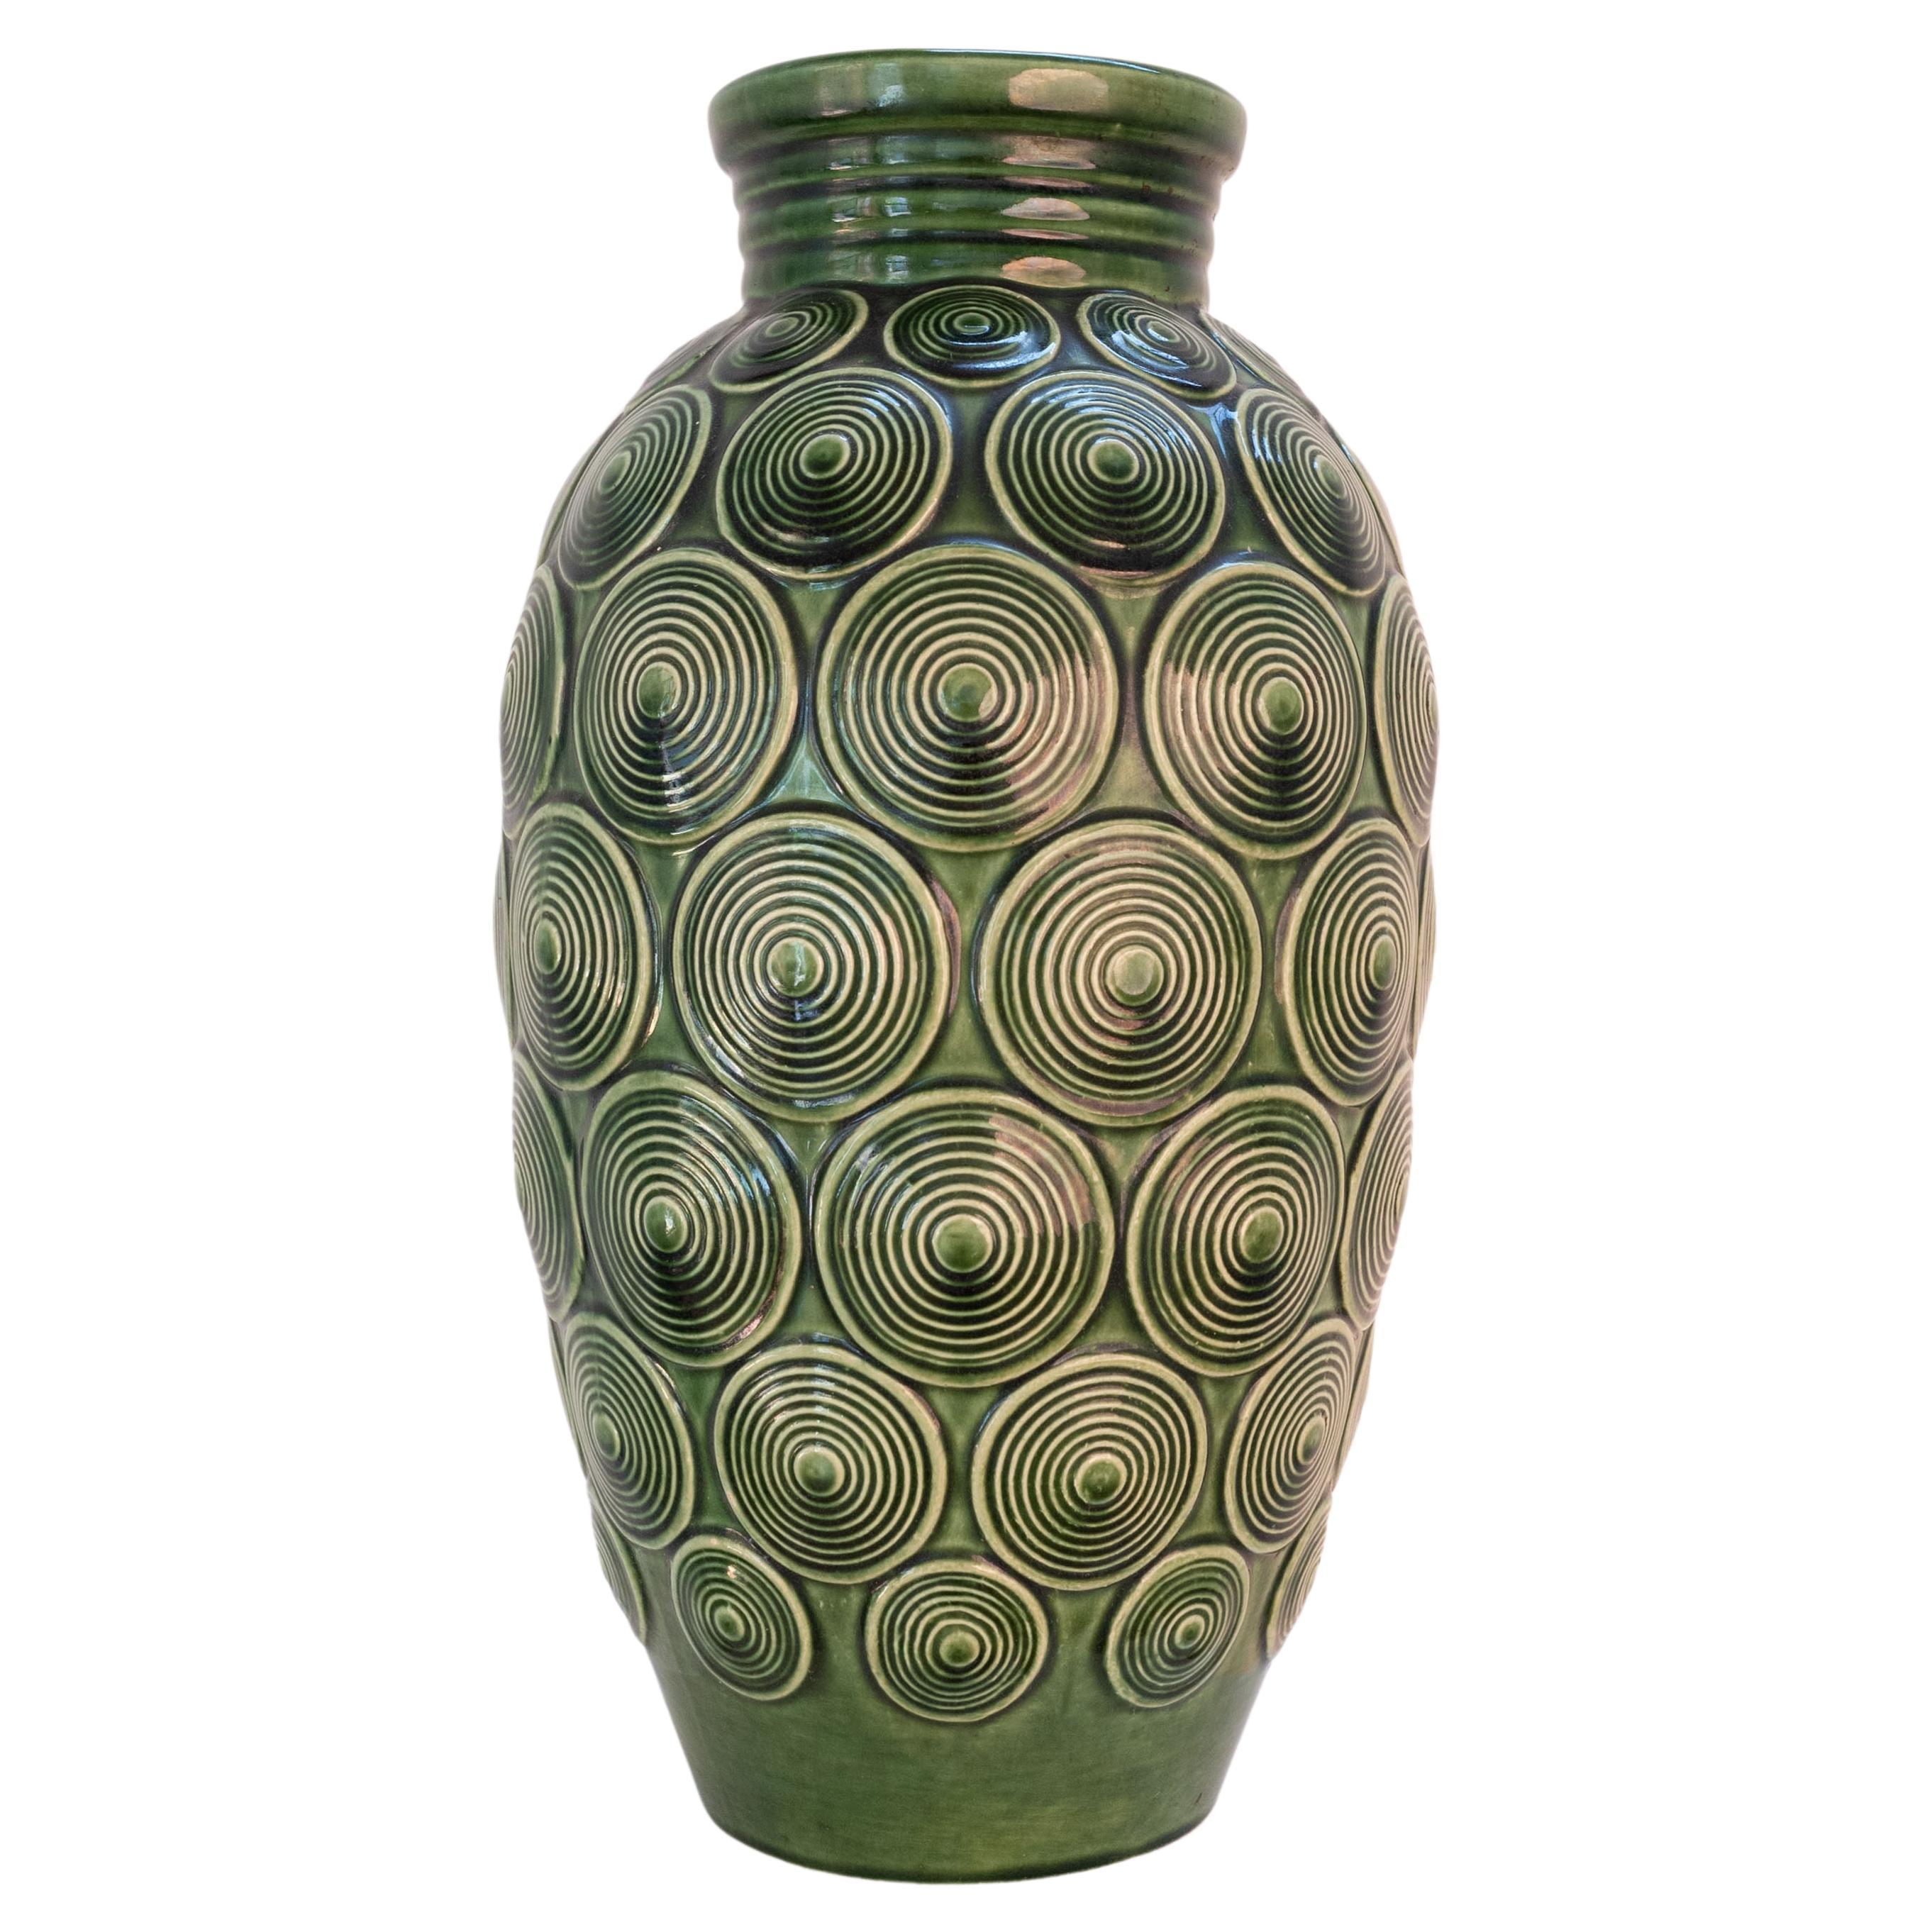 A vintage West Germany green glazed pottery vase